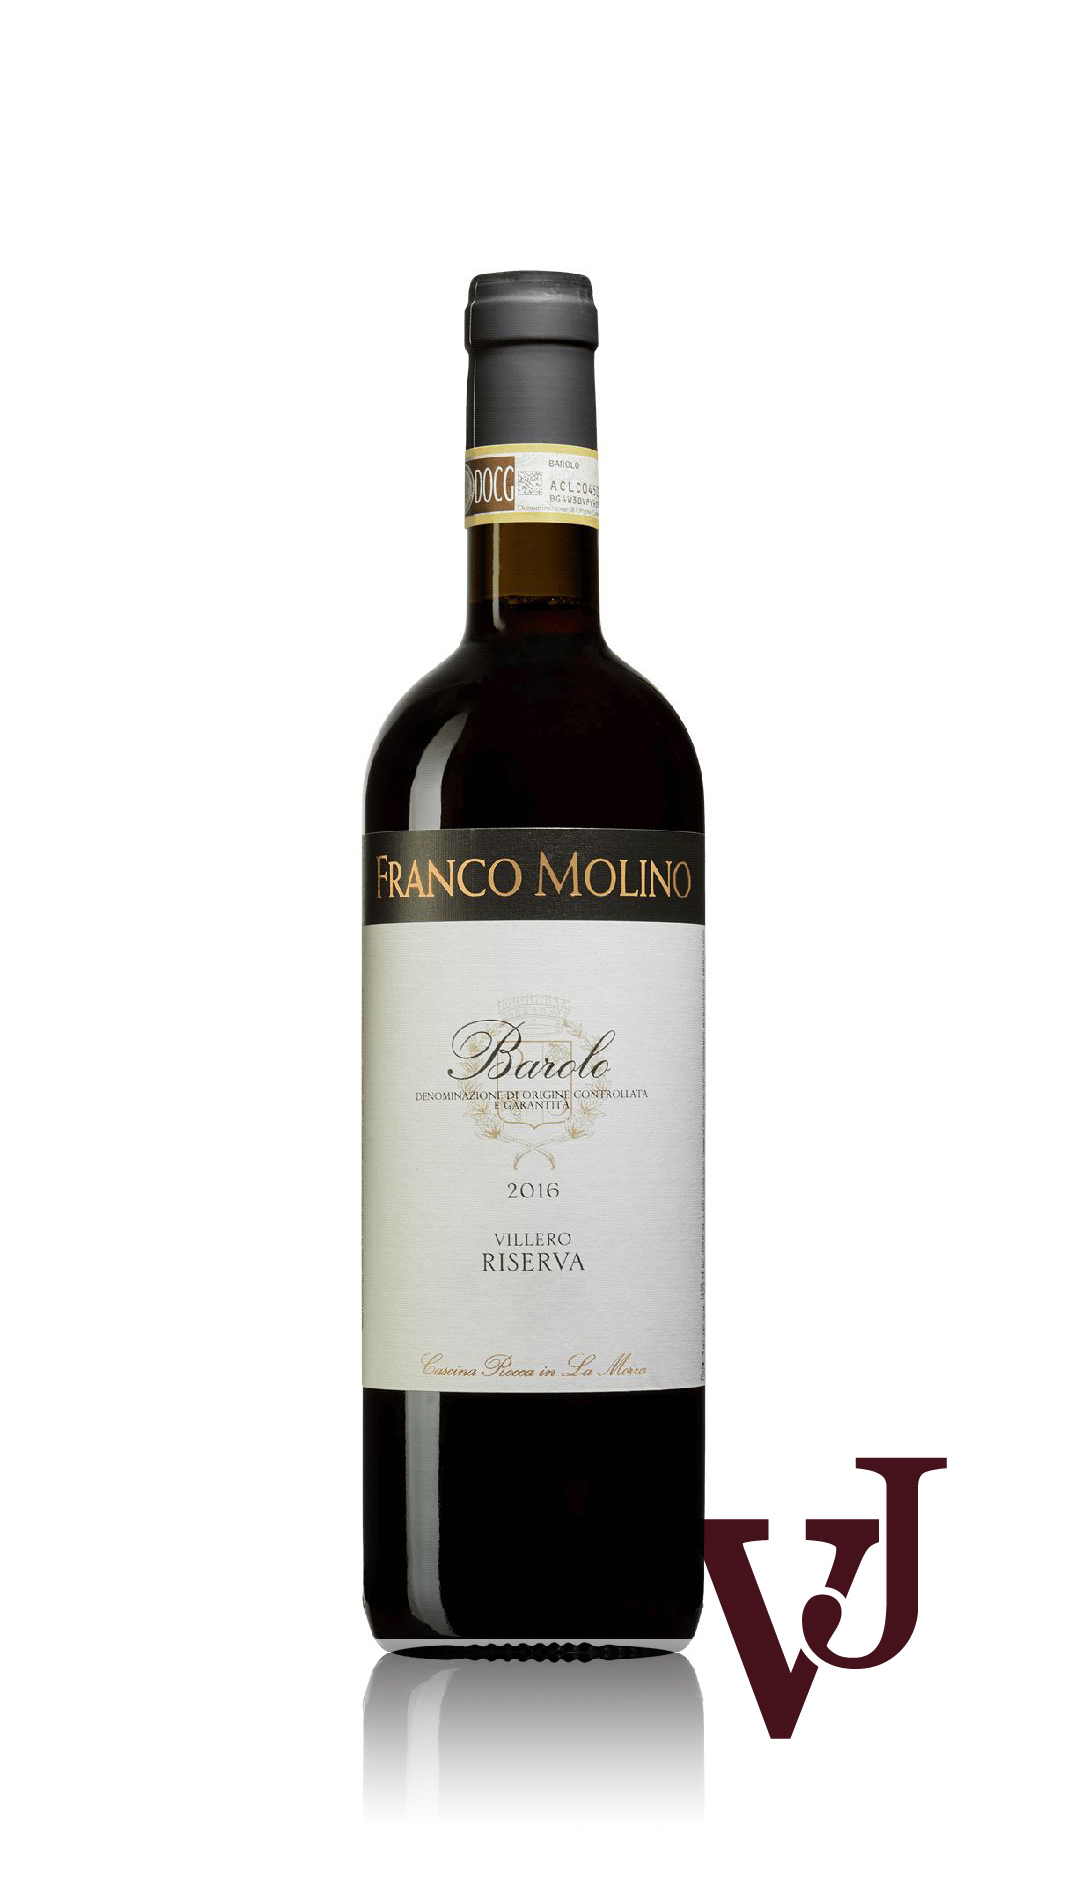 Rött Vin - Franco Molino Barolo Villero Riserva 2016 artikel nummer 9363101 från producenten Franco Molino Cascina Rocca från Italien